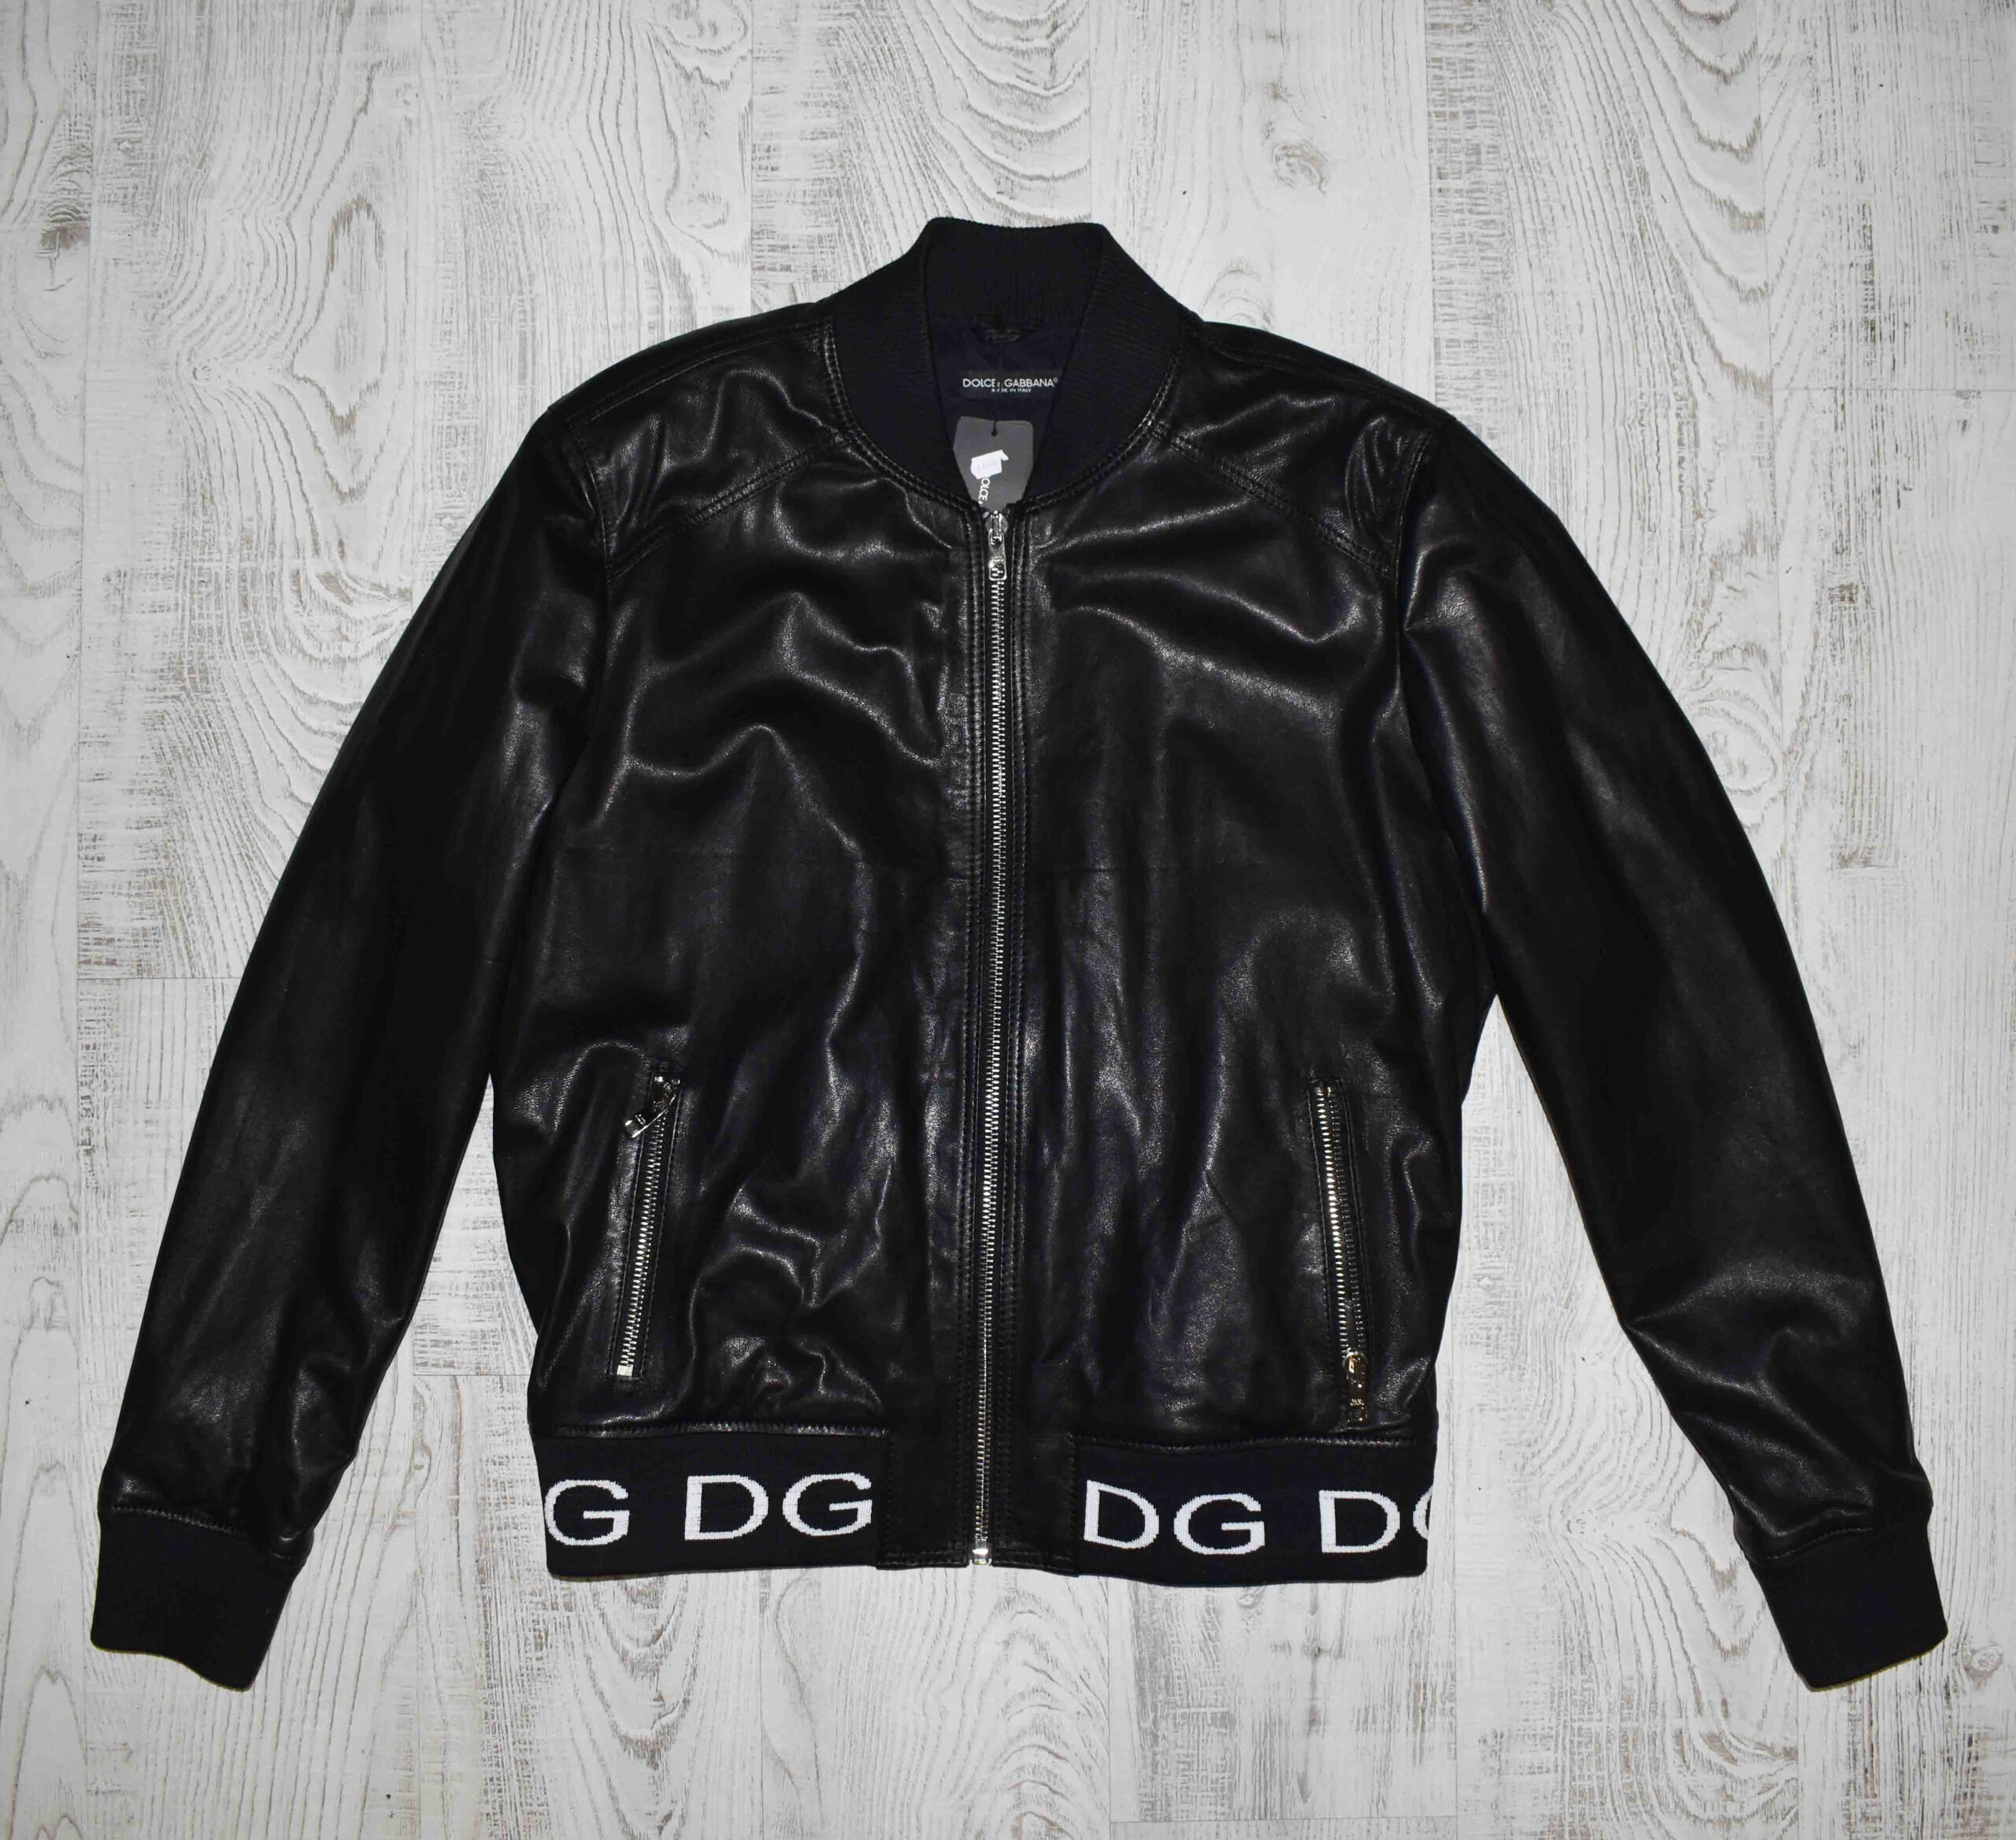 Dolce Gabbana Leather Jacket - Leather Guys: Luxury Leather Jackets